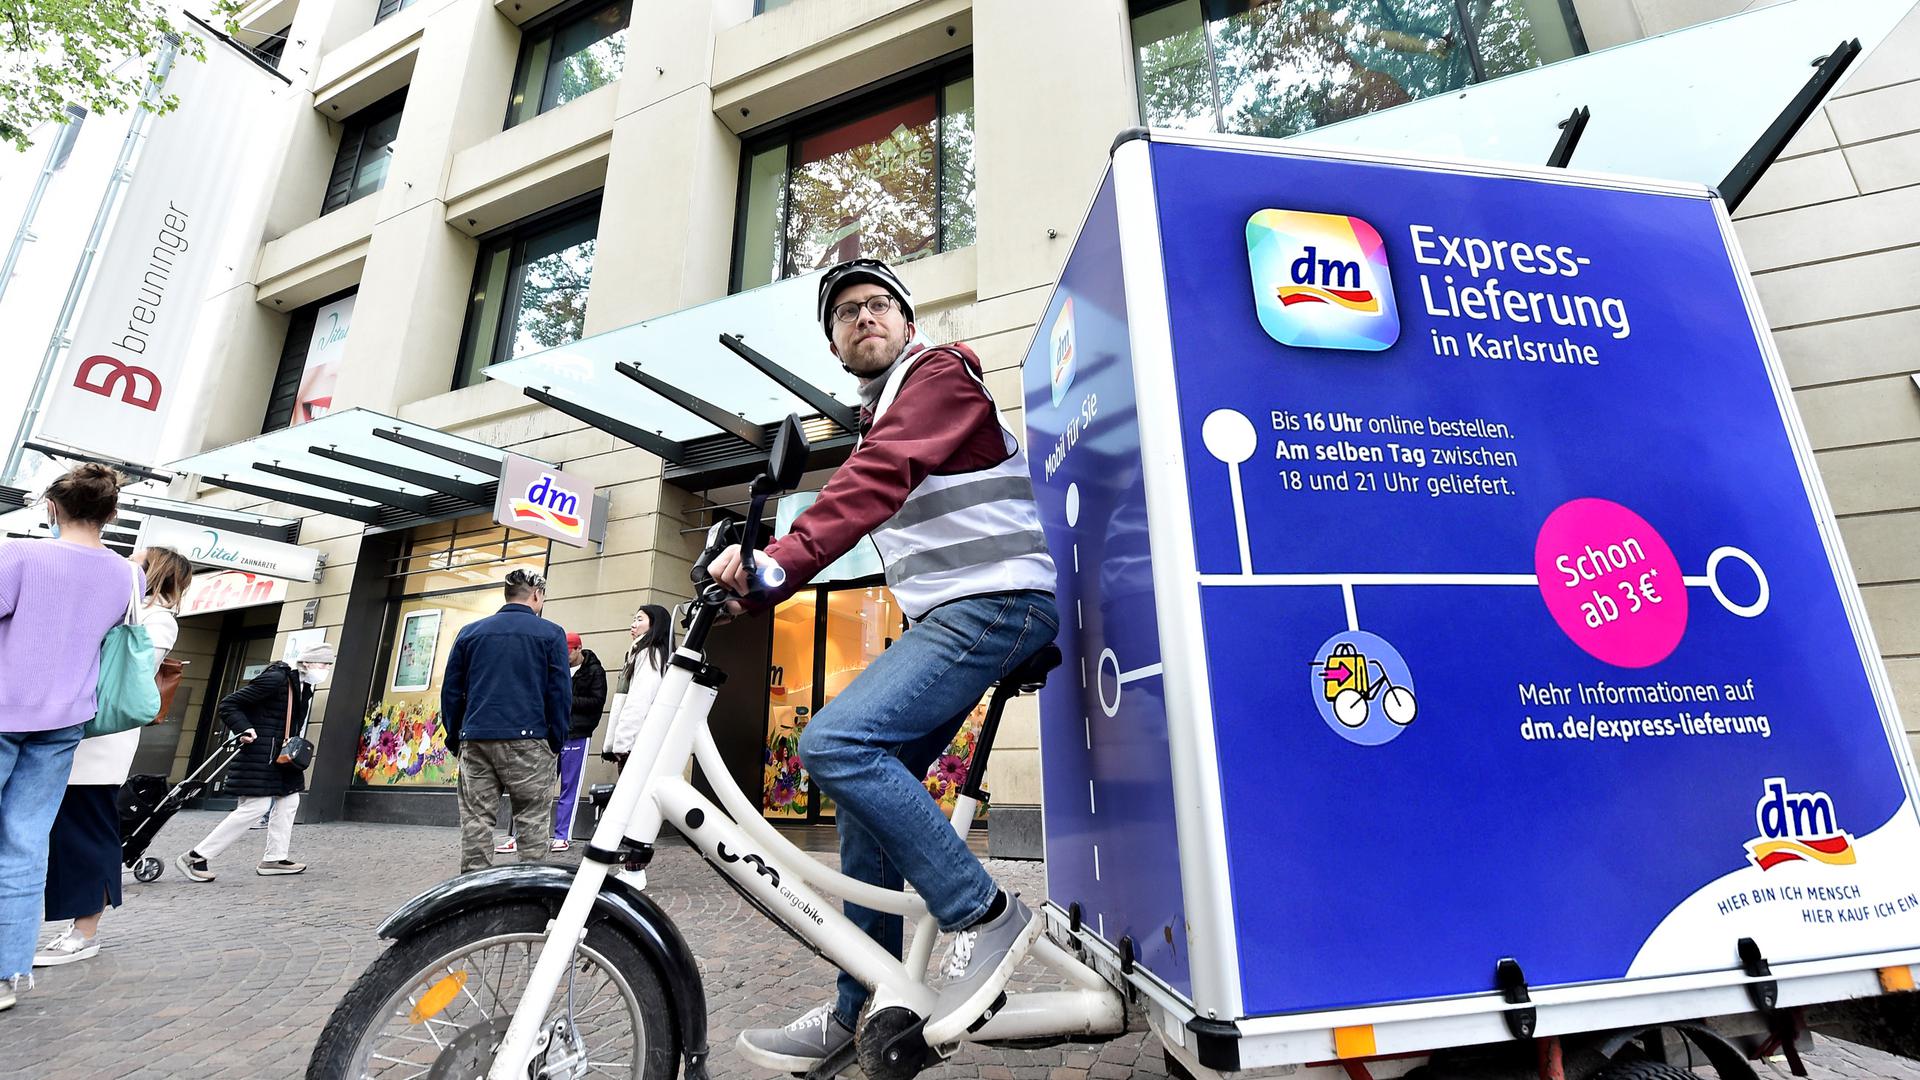 Der Drogeriemarktkonzern dm testet in seiner Heimatstadt die Expresszustellung per Lastenrad. 